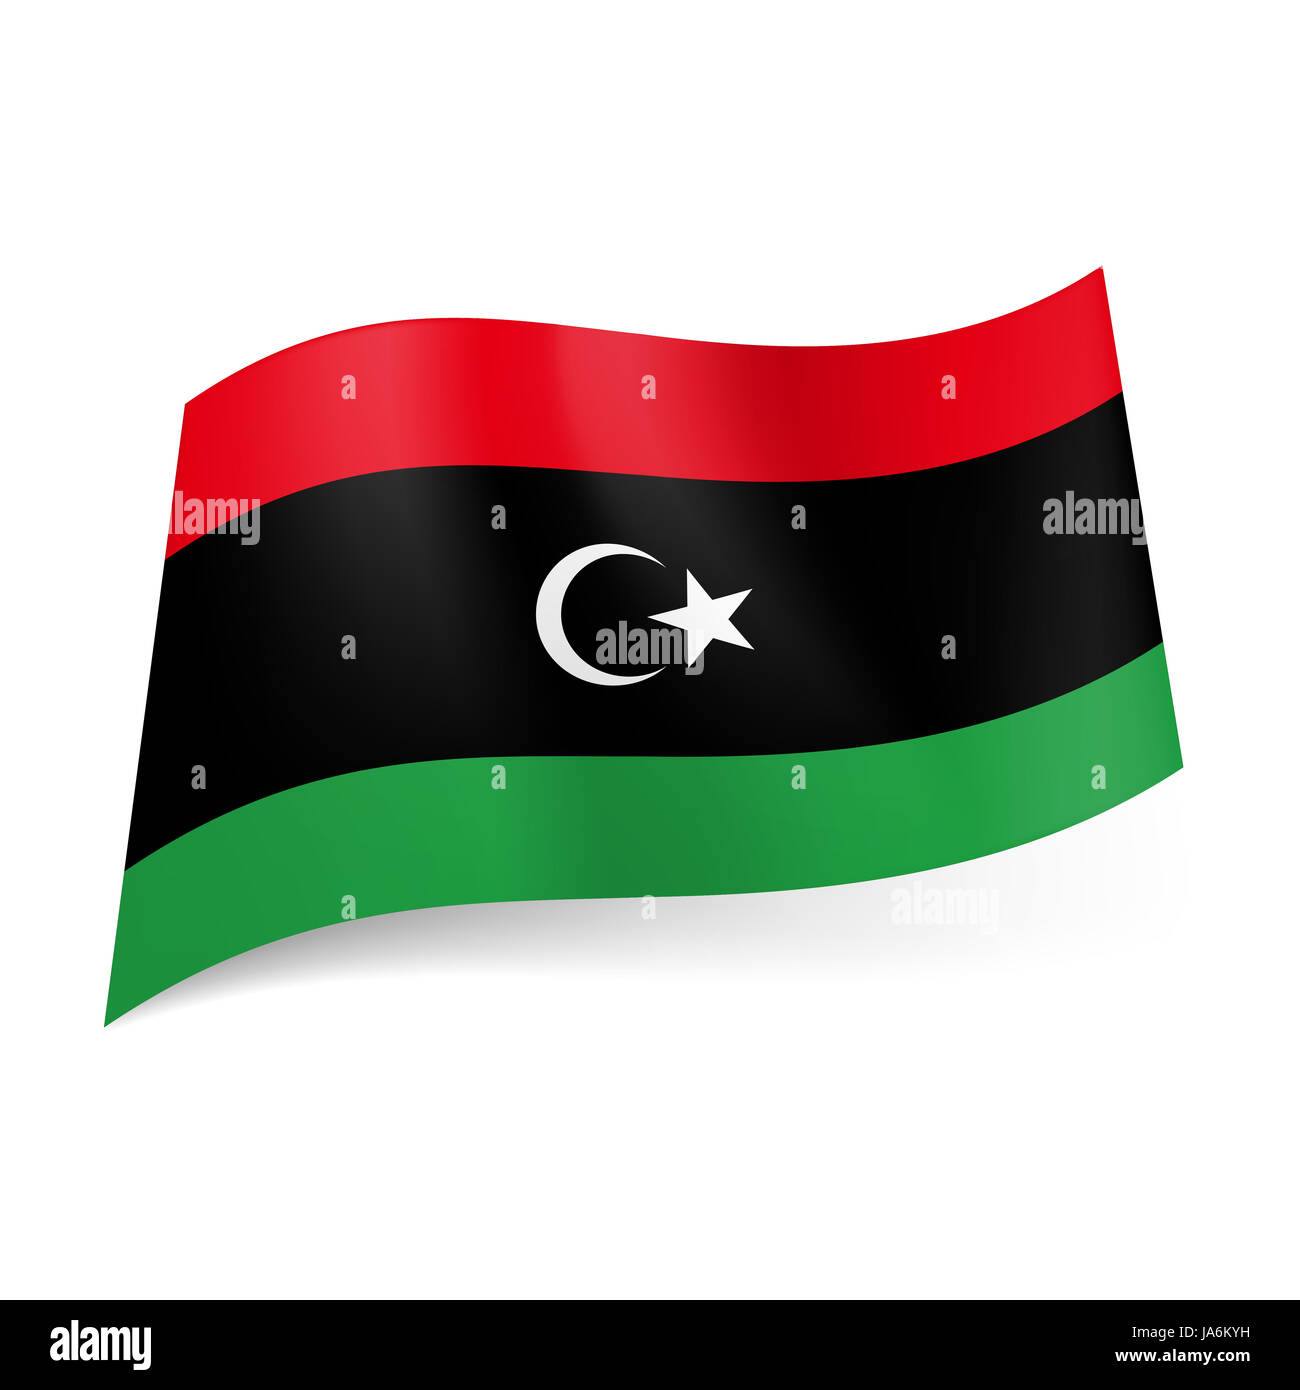 Bandiera Nazionale della Libia: rosso, verde e nero strisce orizzontali,  bianco falce di luna e stella sul campo centrale Foto stock - Alamy